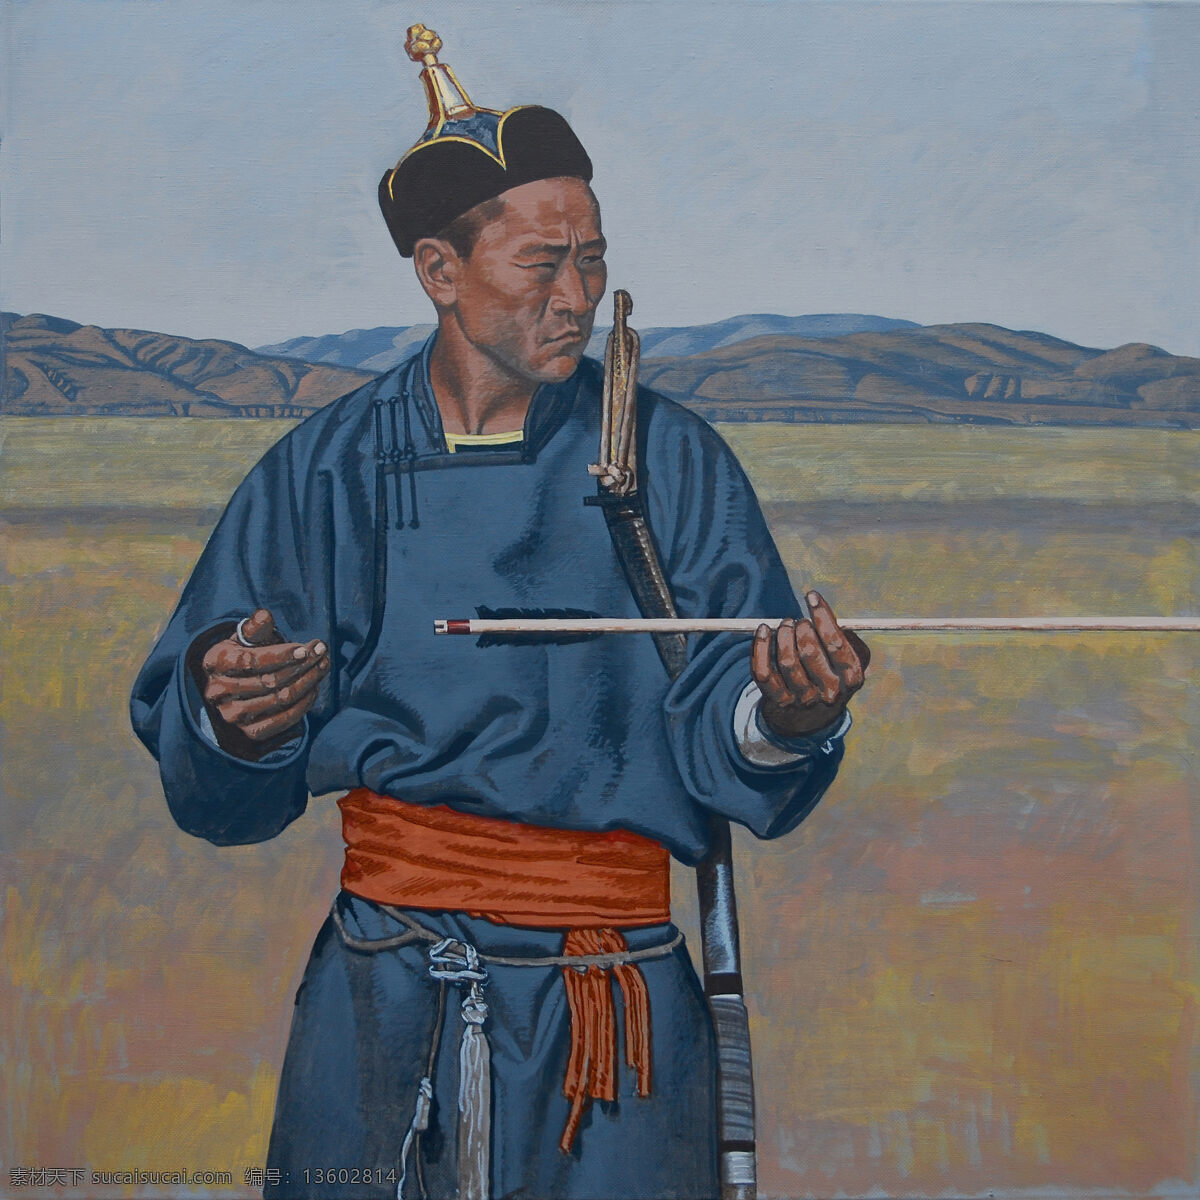 蒙古 元素 生活 插画 蒙古元素 mongol 蒙古插画 蒙古人 文化艺术 传统文化